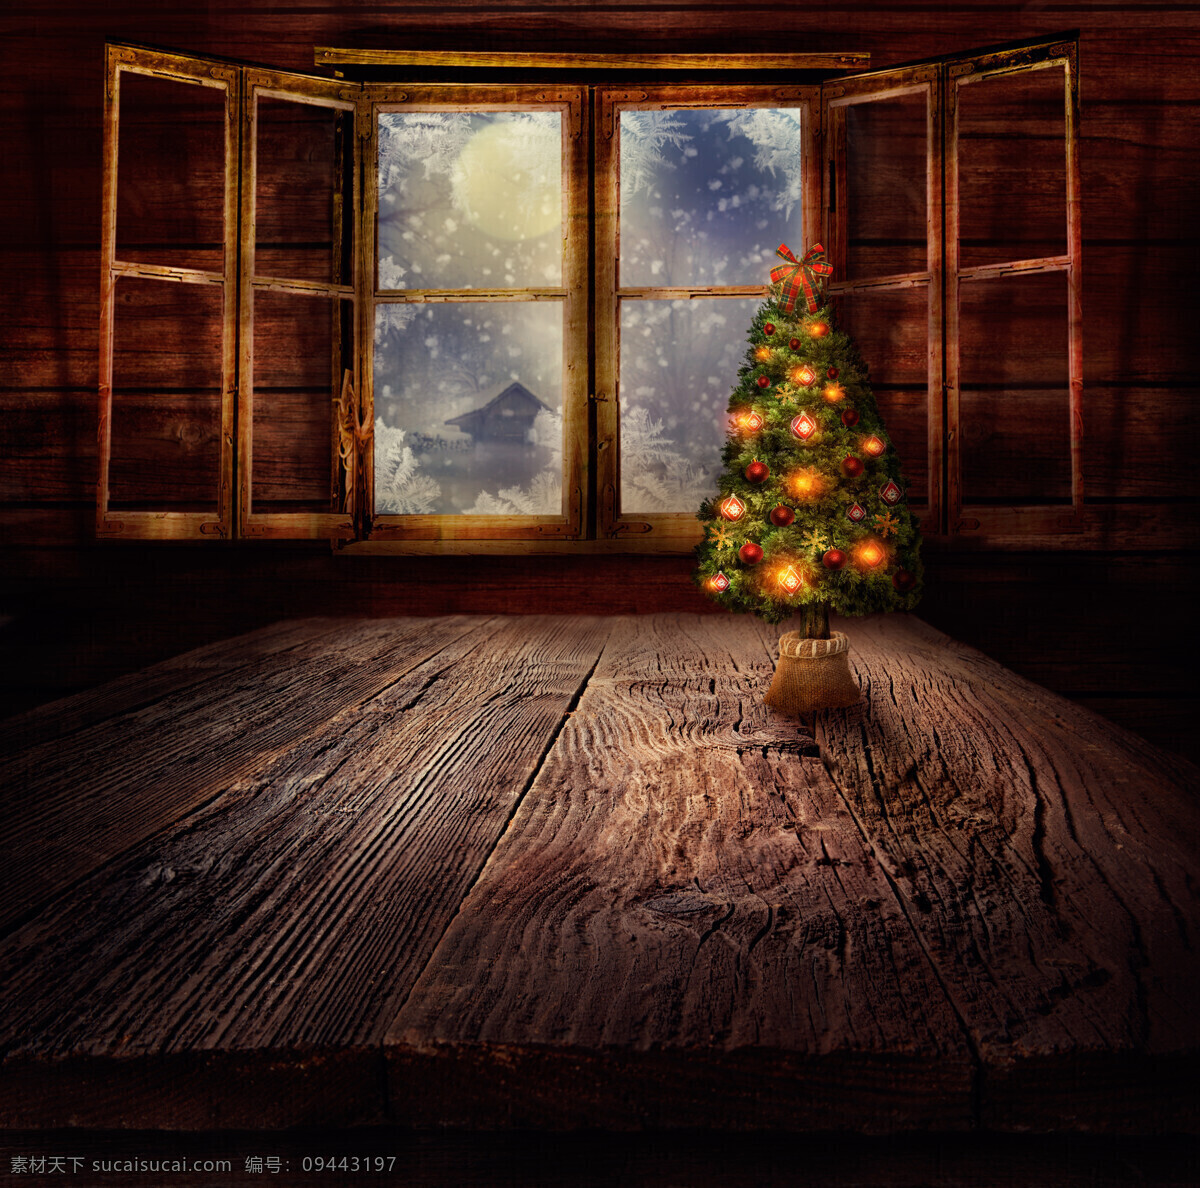 窗户 圣诞树 木板背景 圣诞节背景 新年背景 底纹边框 底纹背景 节日庆典 生活百科